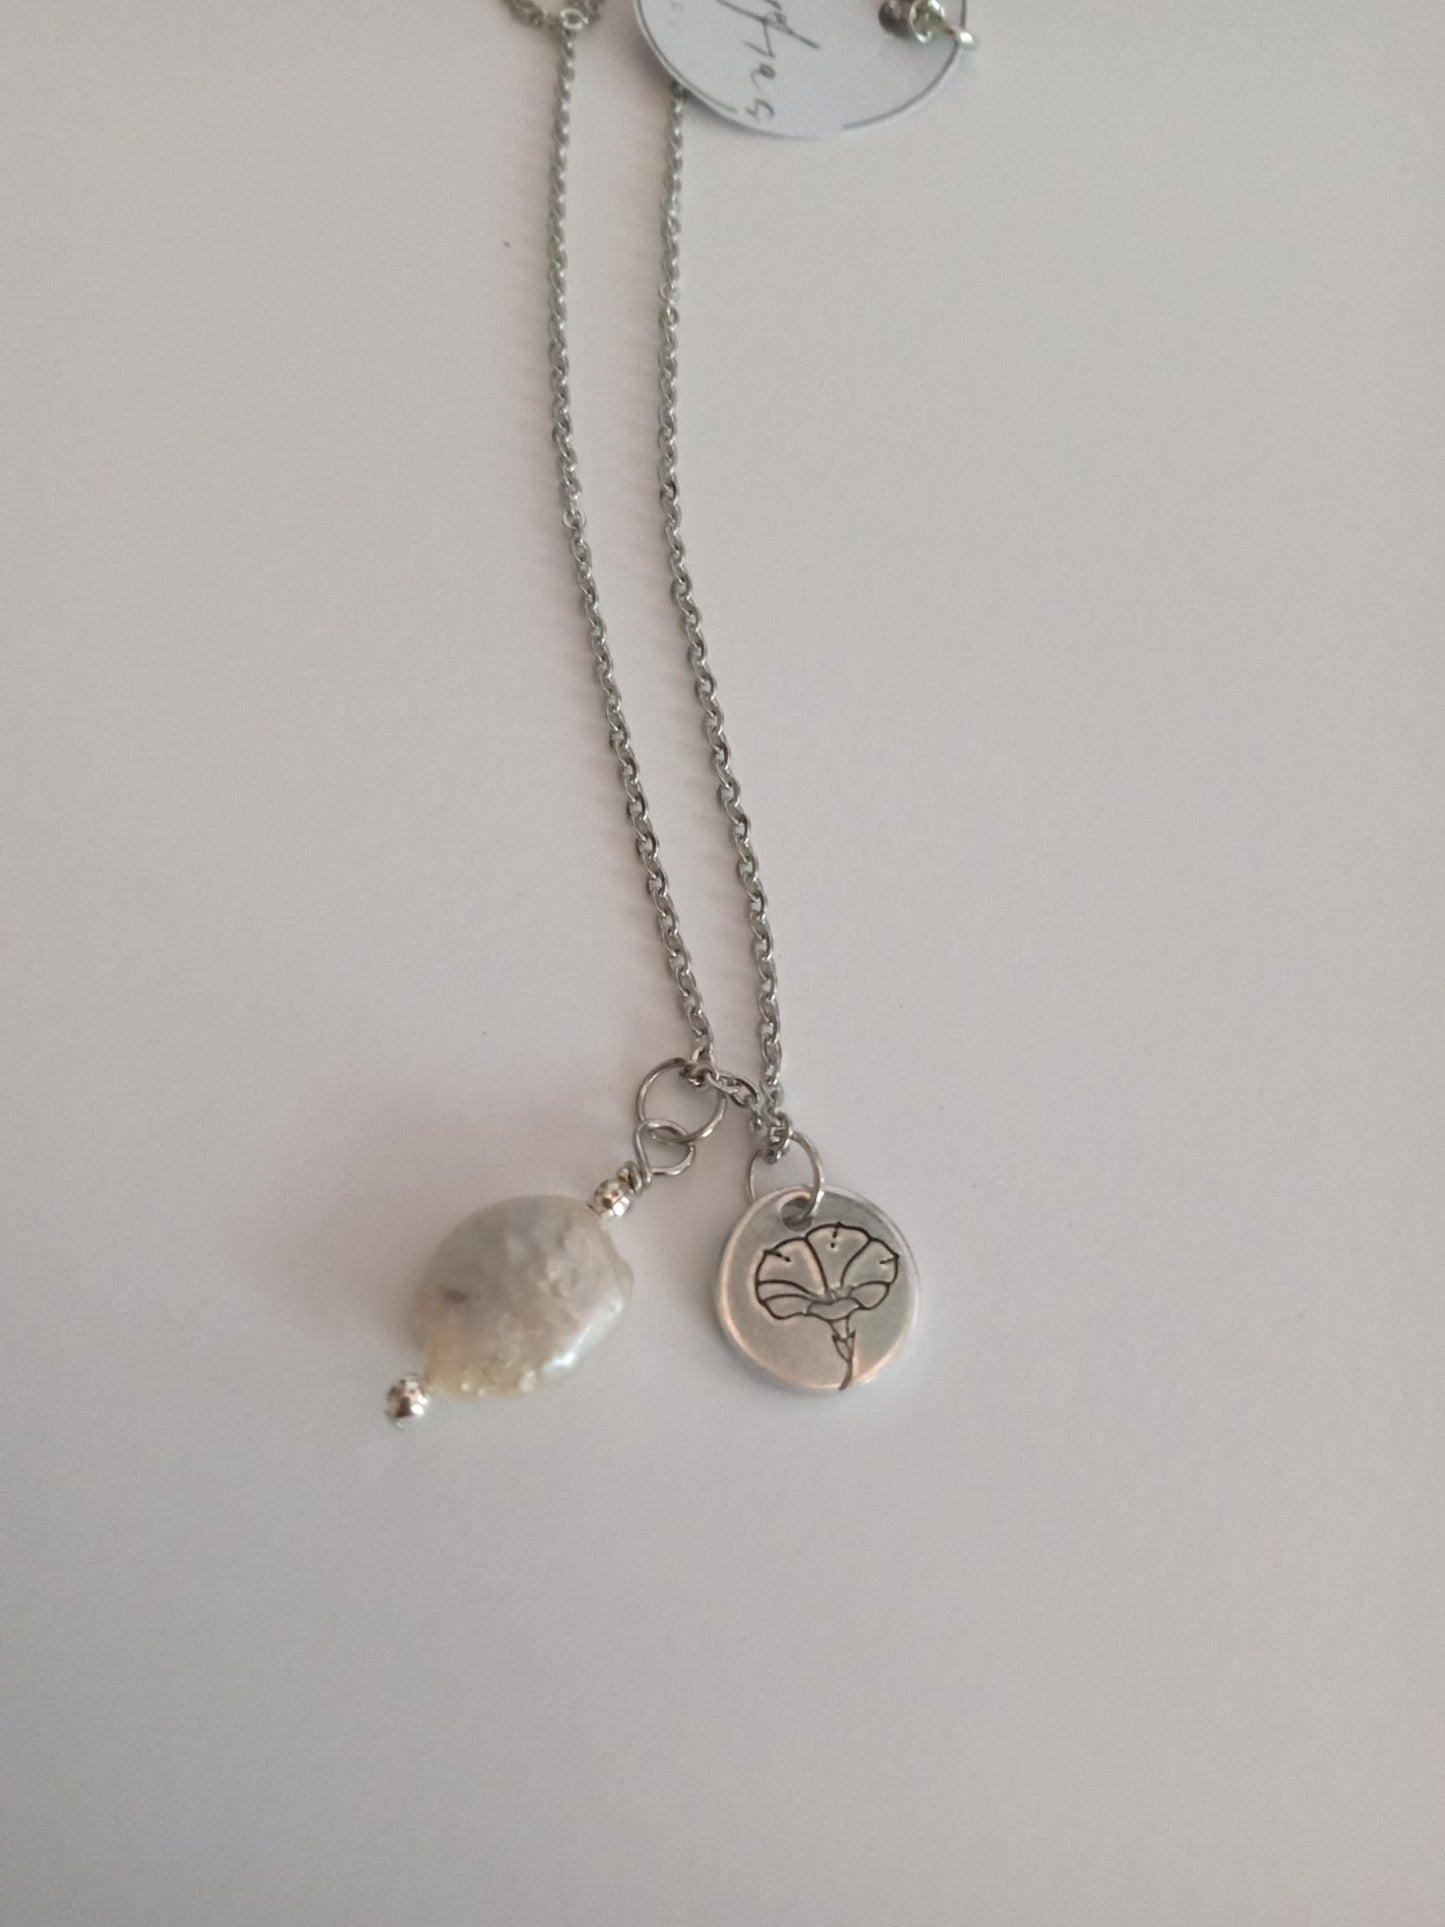 Birth flower necklaces - 1